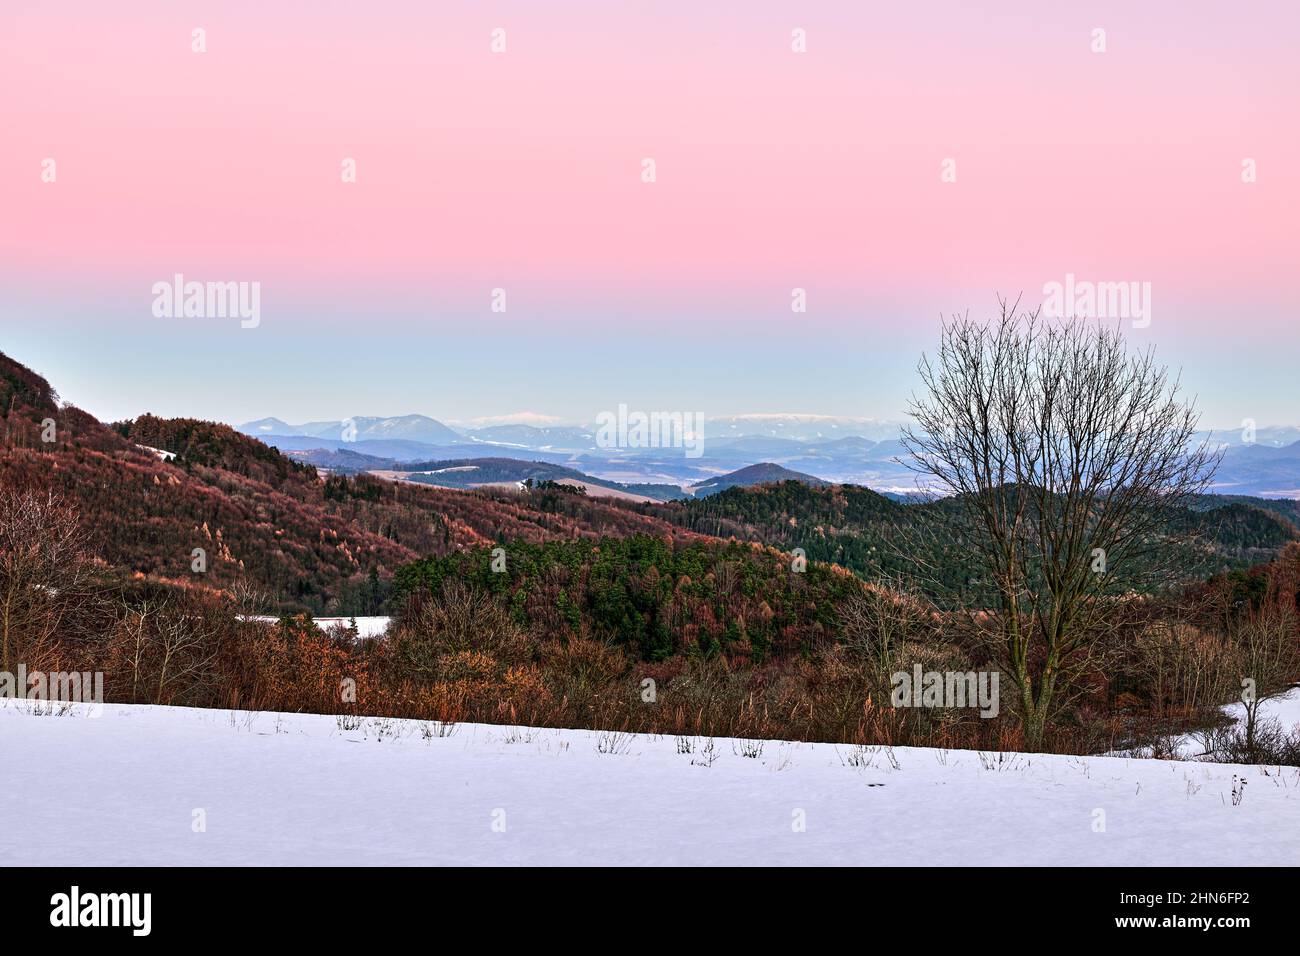 Am frühen Abend Winter Berglandschaft Blick auf das Tal mit Mischwald und Hügeln.Bunte Himmel. Natürlicher Hintergrund, Tapete. Vrsatec, Slowakei Stockfoto